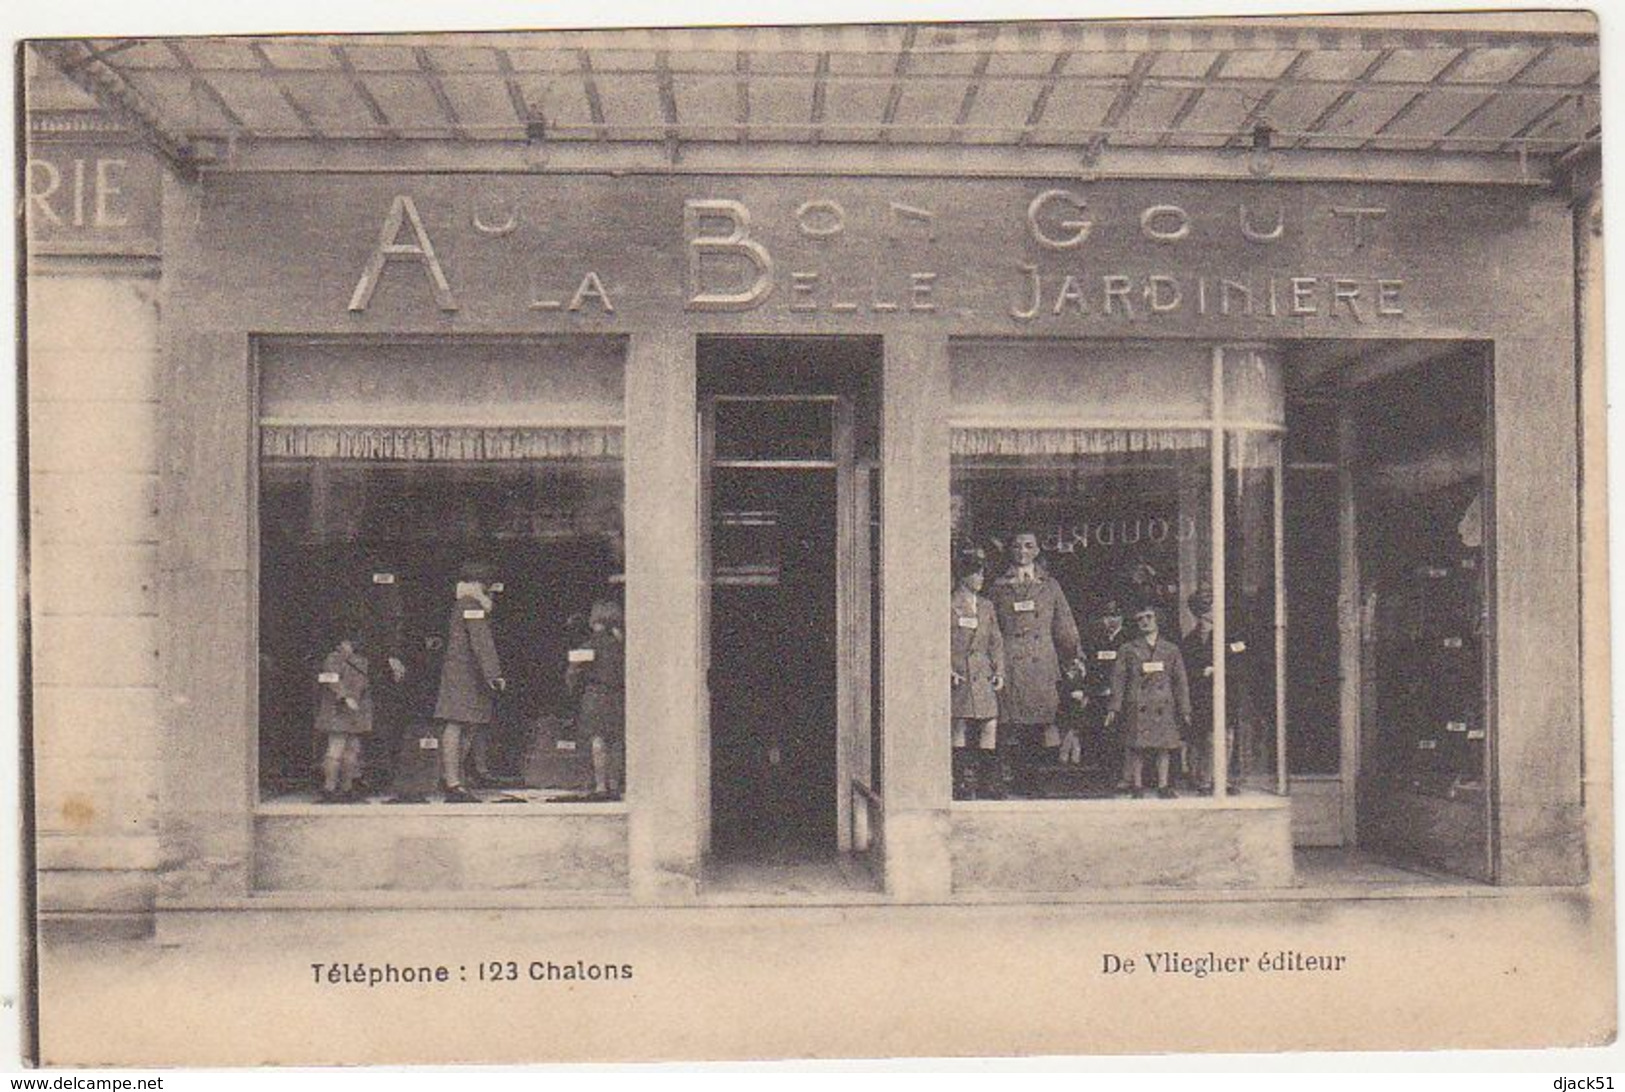 51 - Magasin -  AU BON GOUT / A LA BELLE JARDINIERE (Place De La République) CHALONS-sur-MARNE / Années 30 - Châlons-sur-Marne